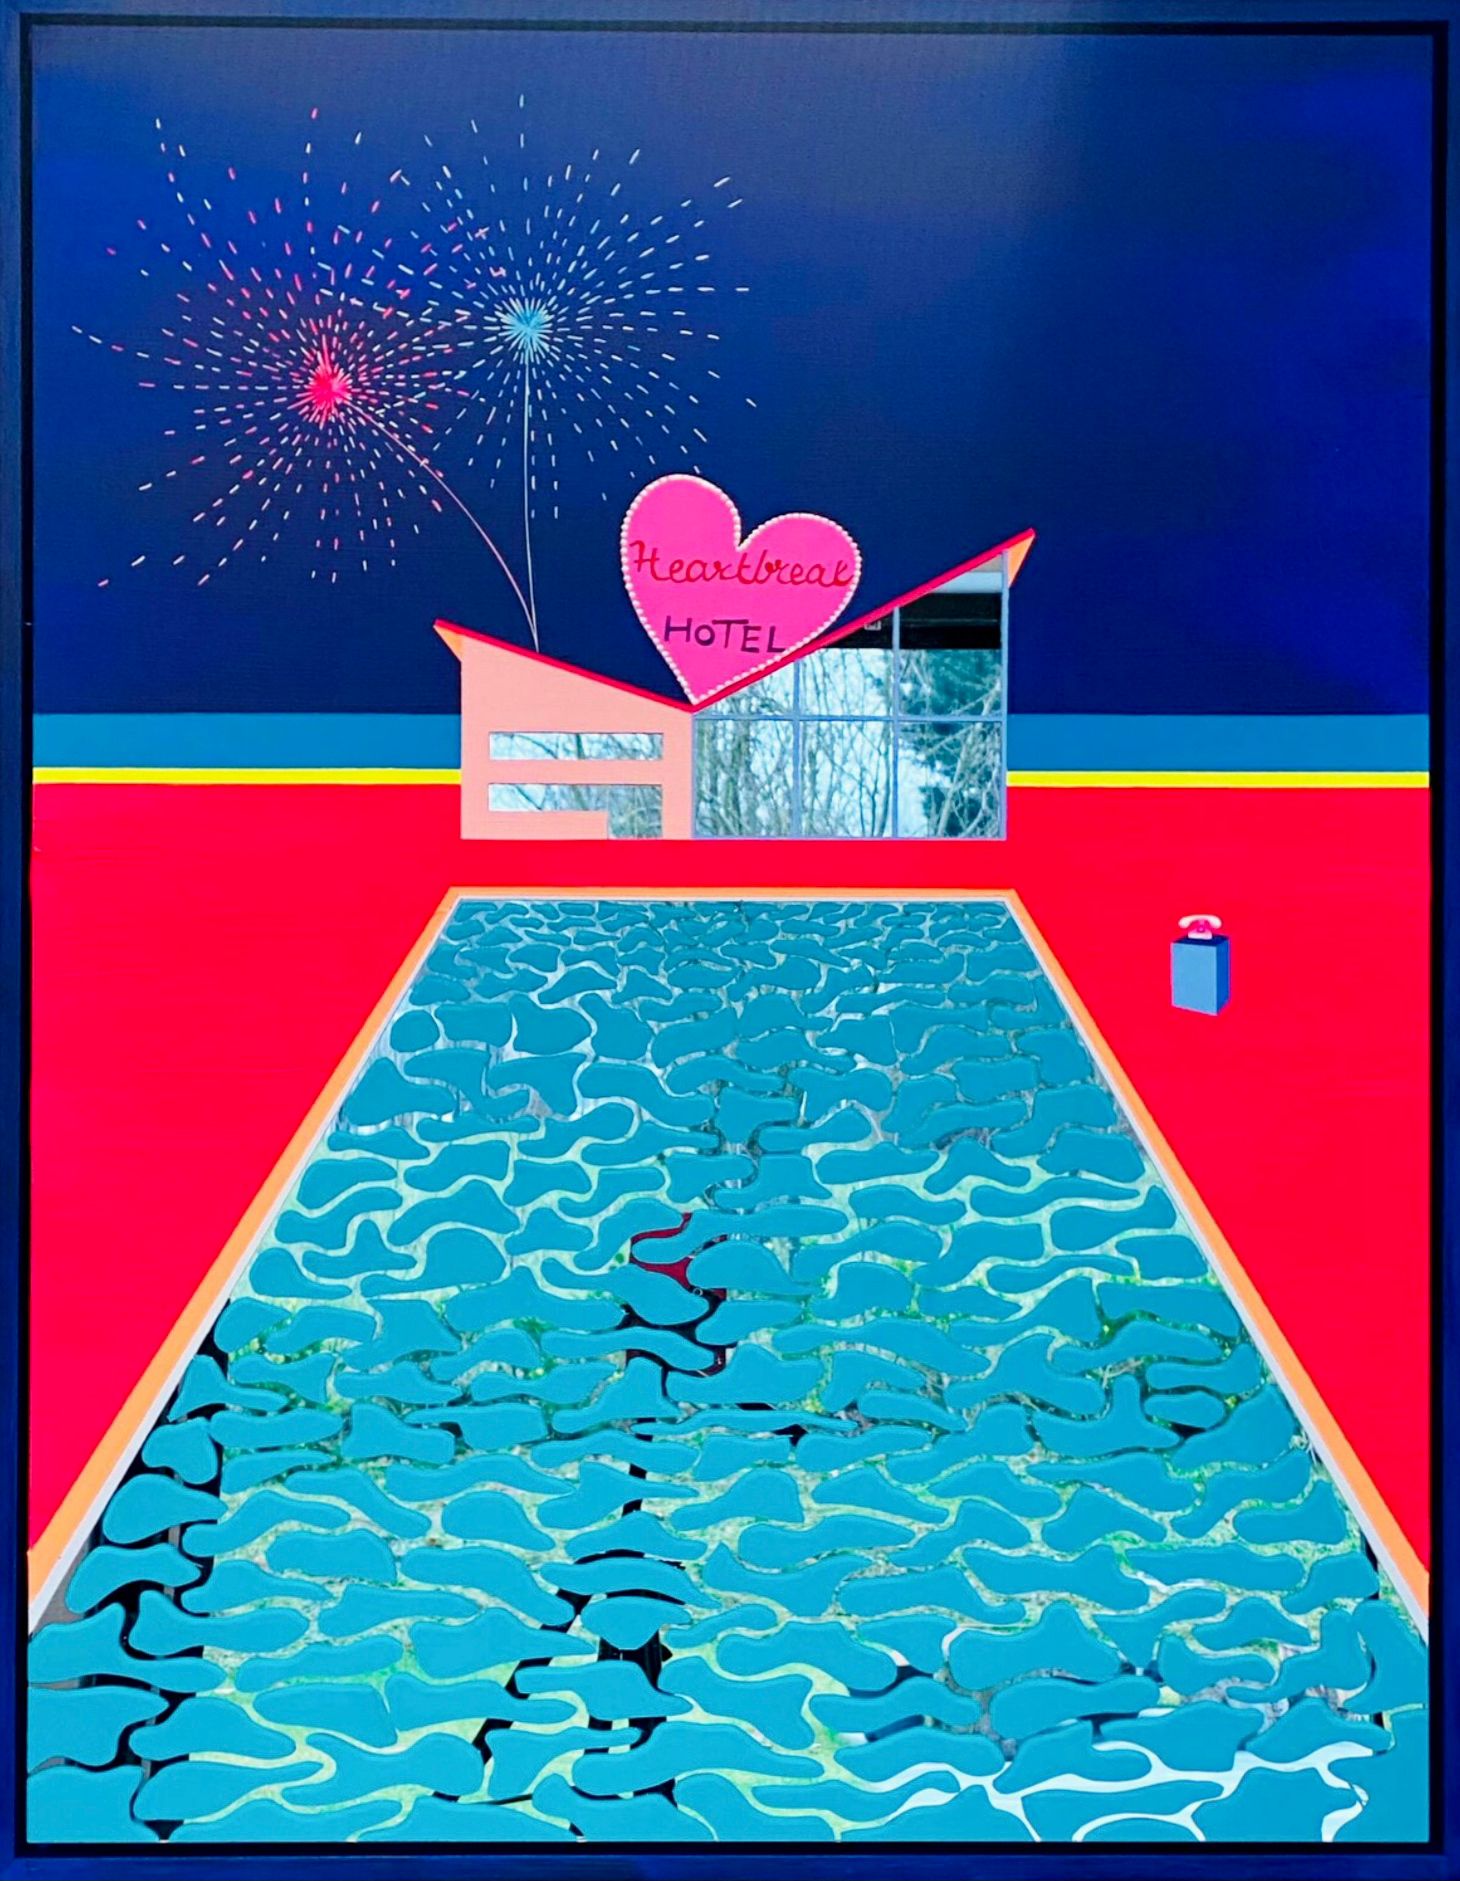 Isabelle Derecque, "Heartbreak hotel" Pittura colorata, in un luogo dai colori misteriosi, abitato da creature marine e dipinto su specchi plexi in stile pop-up con colori allegri ed energici. Visualizzato attraverso geometrie, prospettive, contrasti e riflessi.